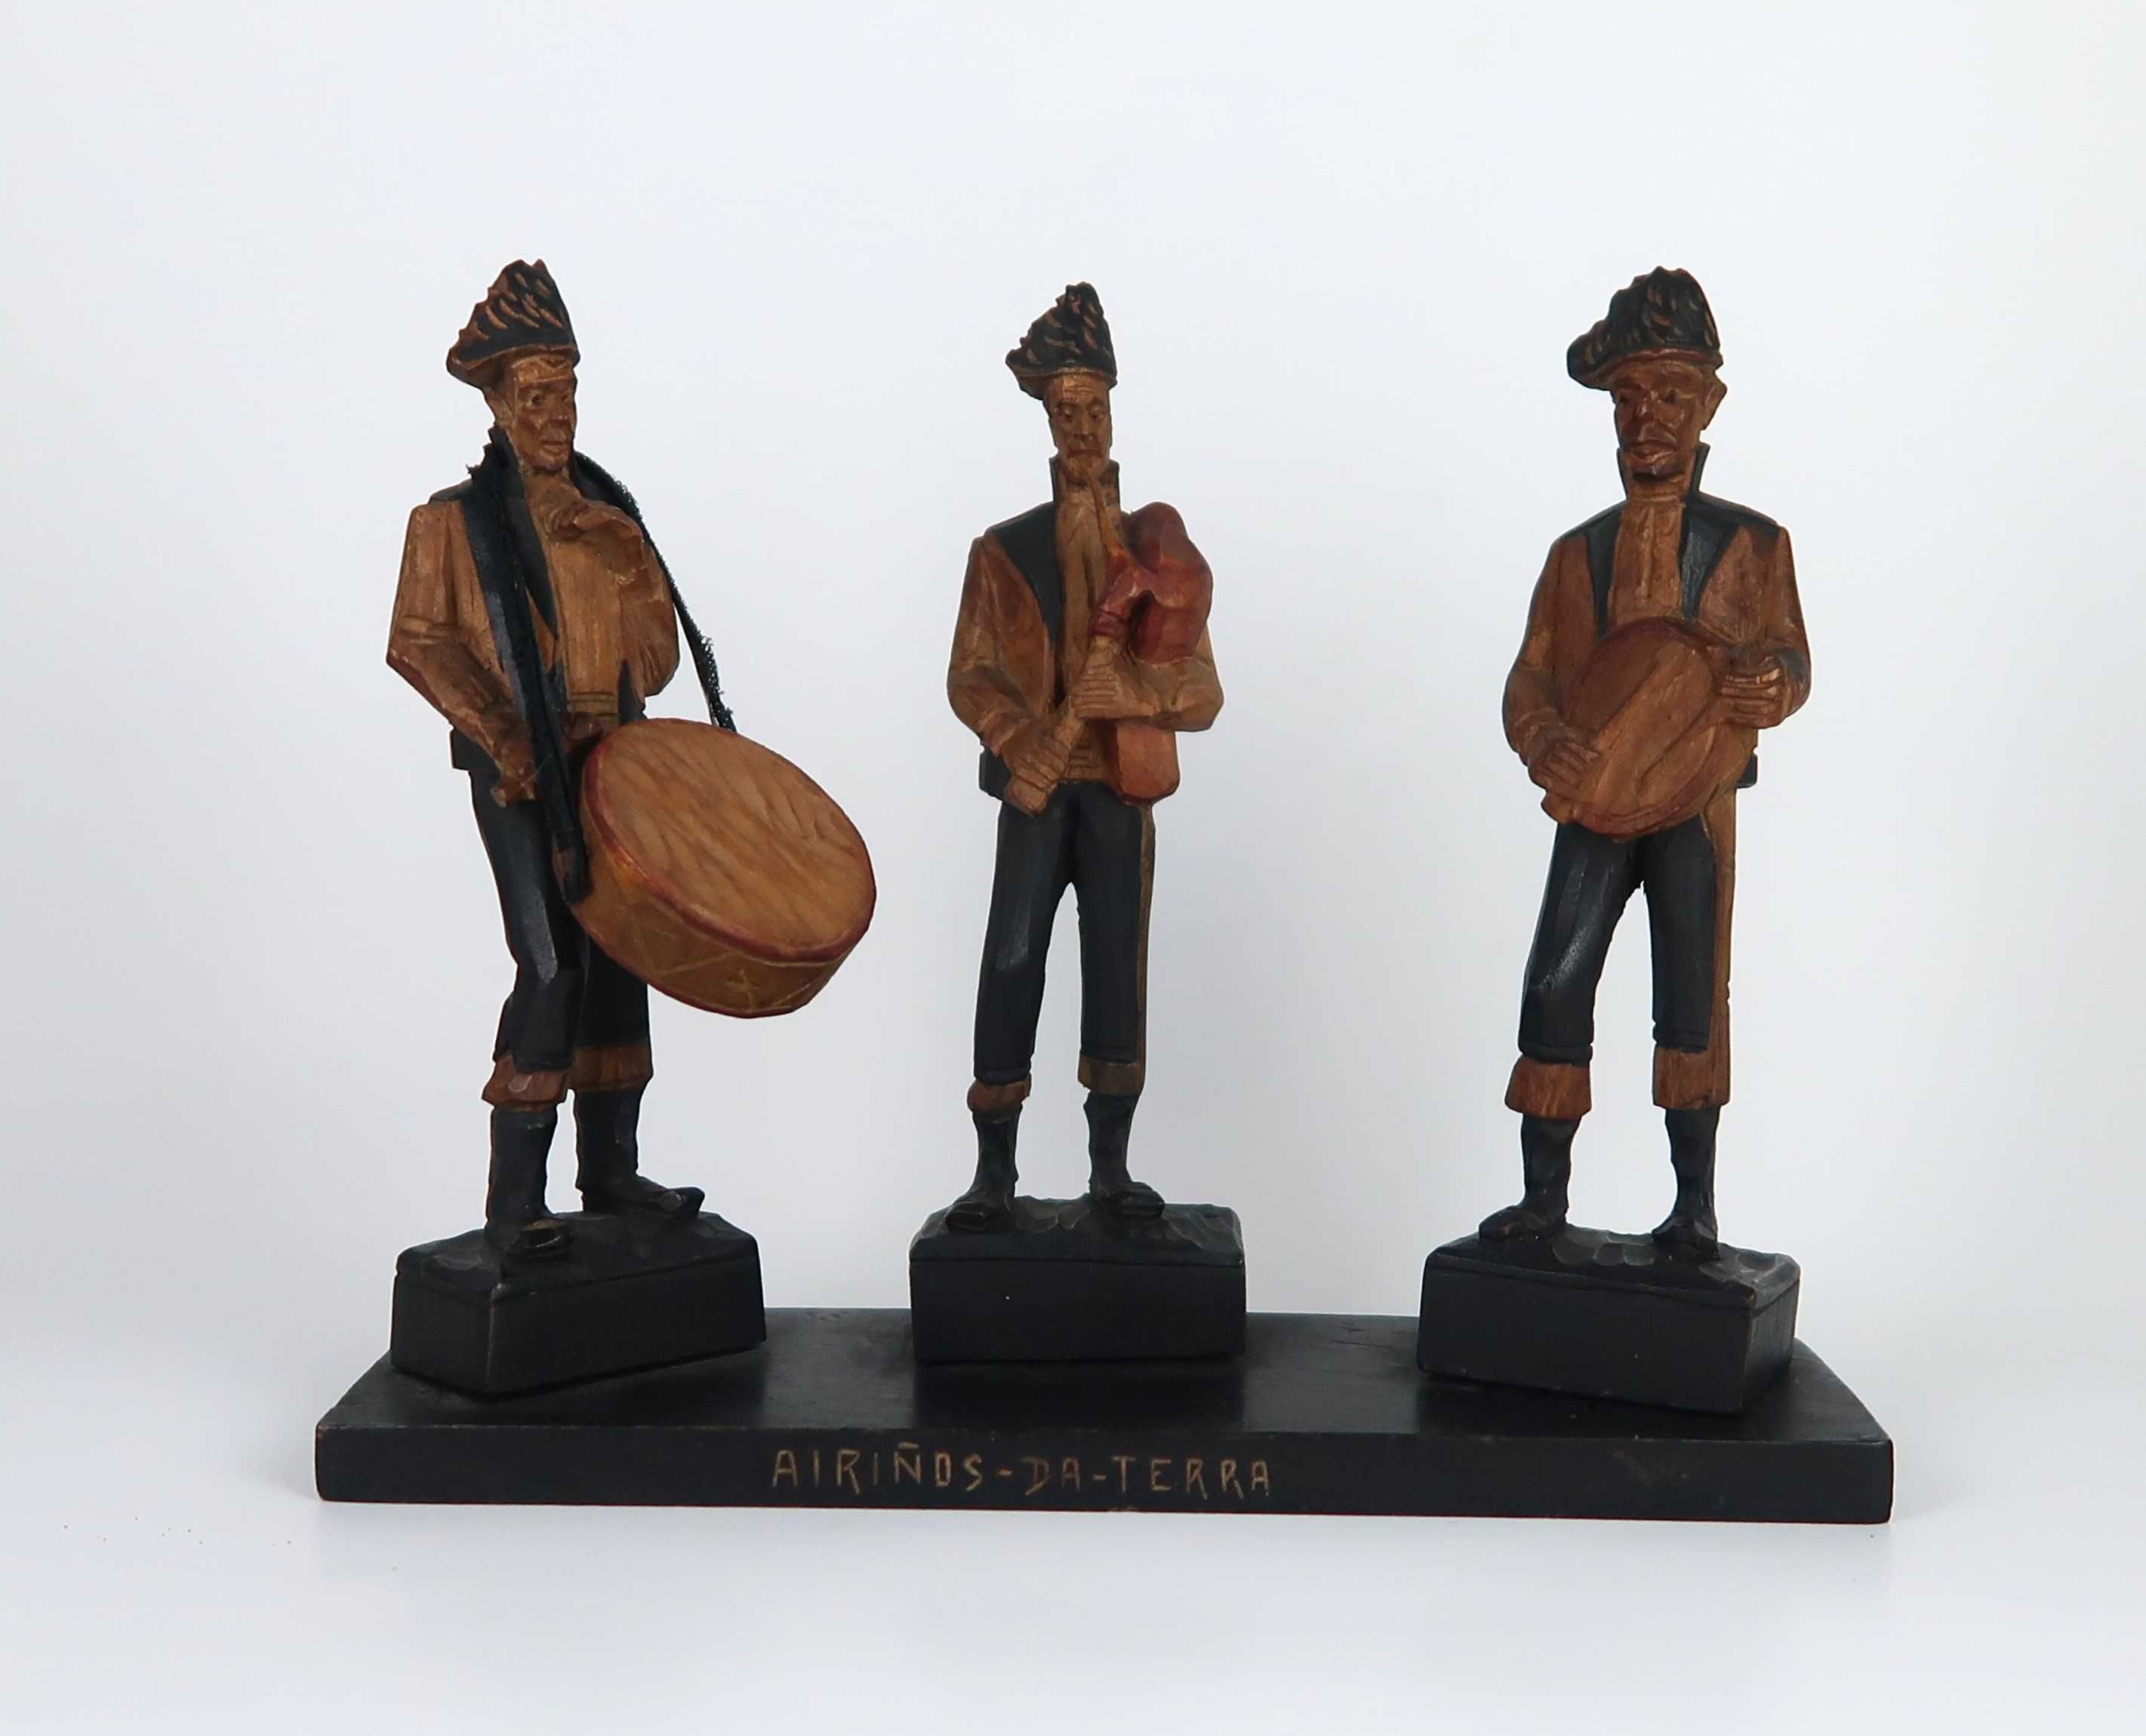 Airinos-da-terra - Grupo escultórico em madeira talhada